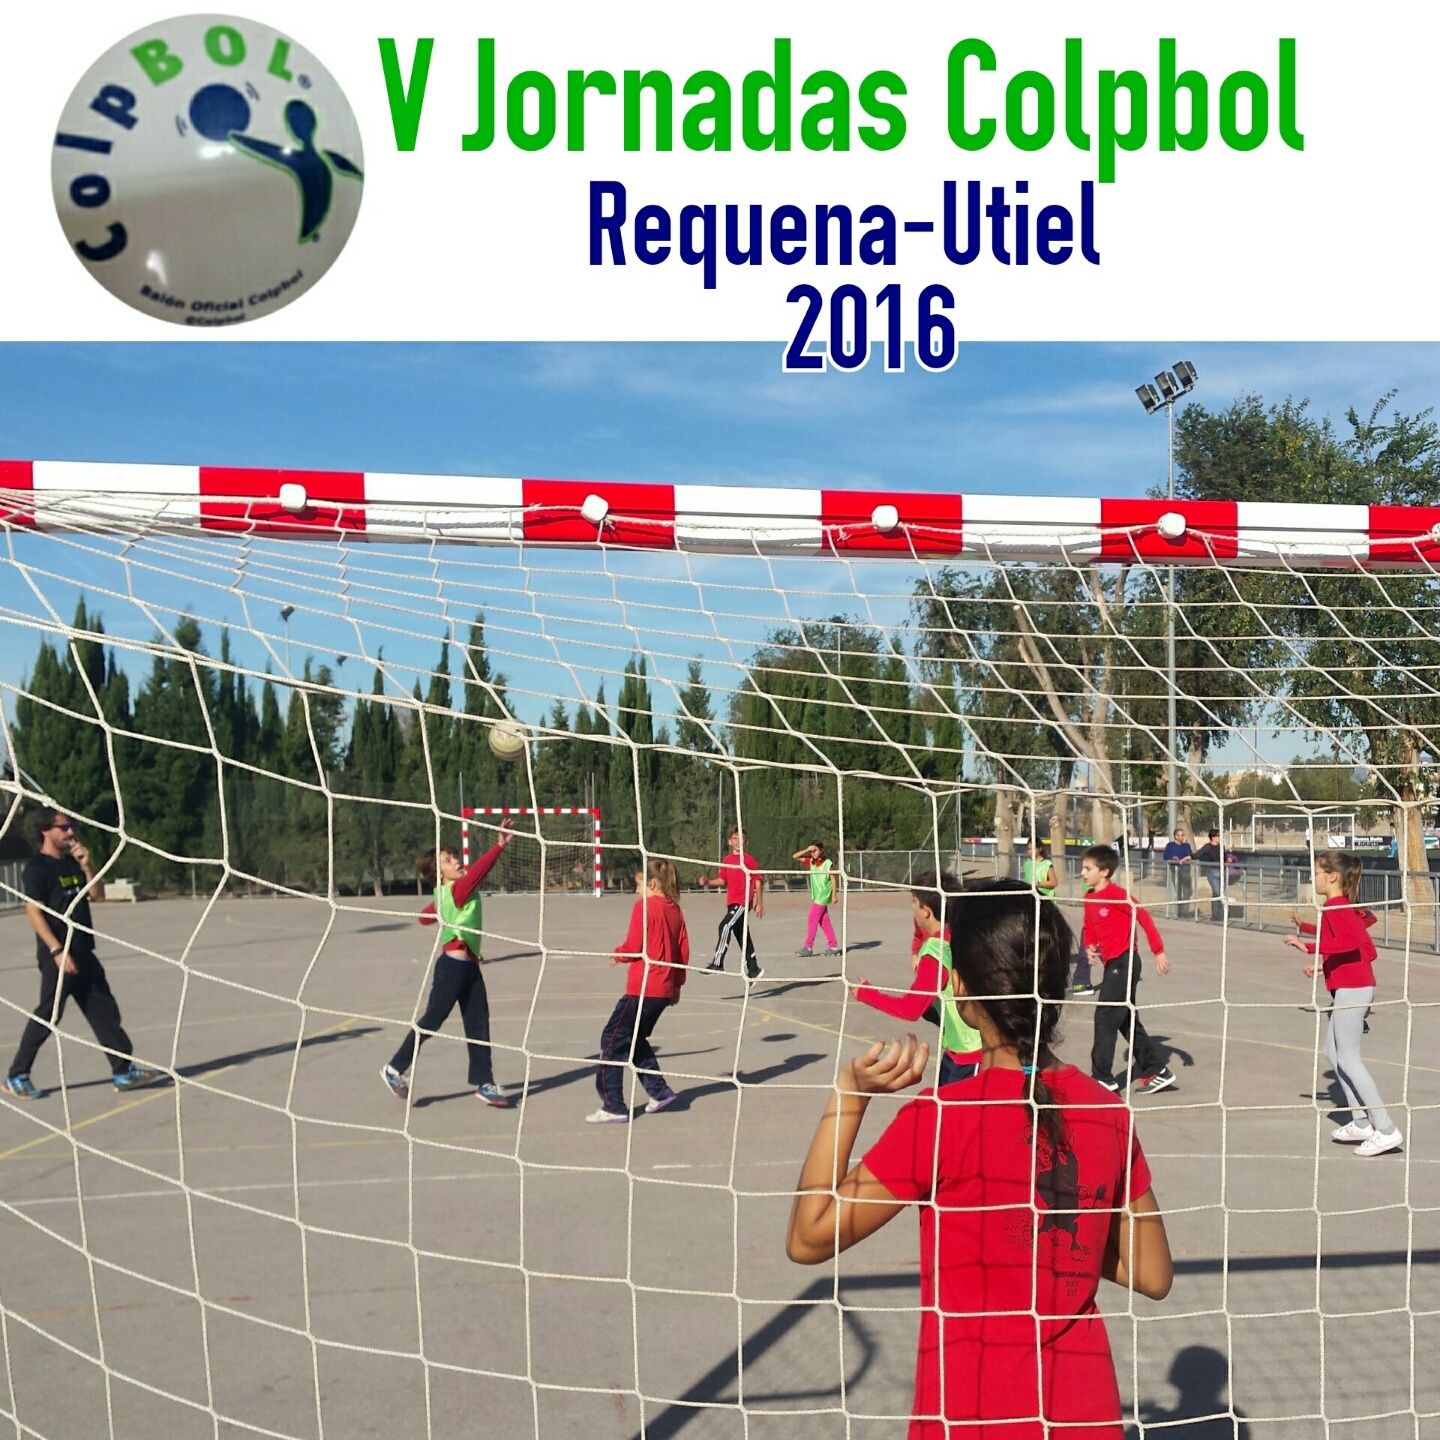 La comarca Requena-Utiel celebra las V Jornadas Comarcales de Colpbol